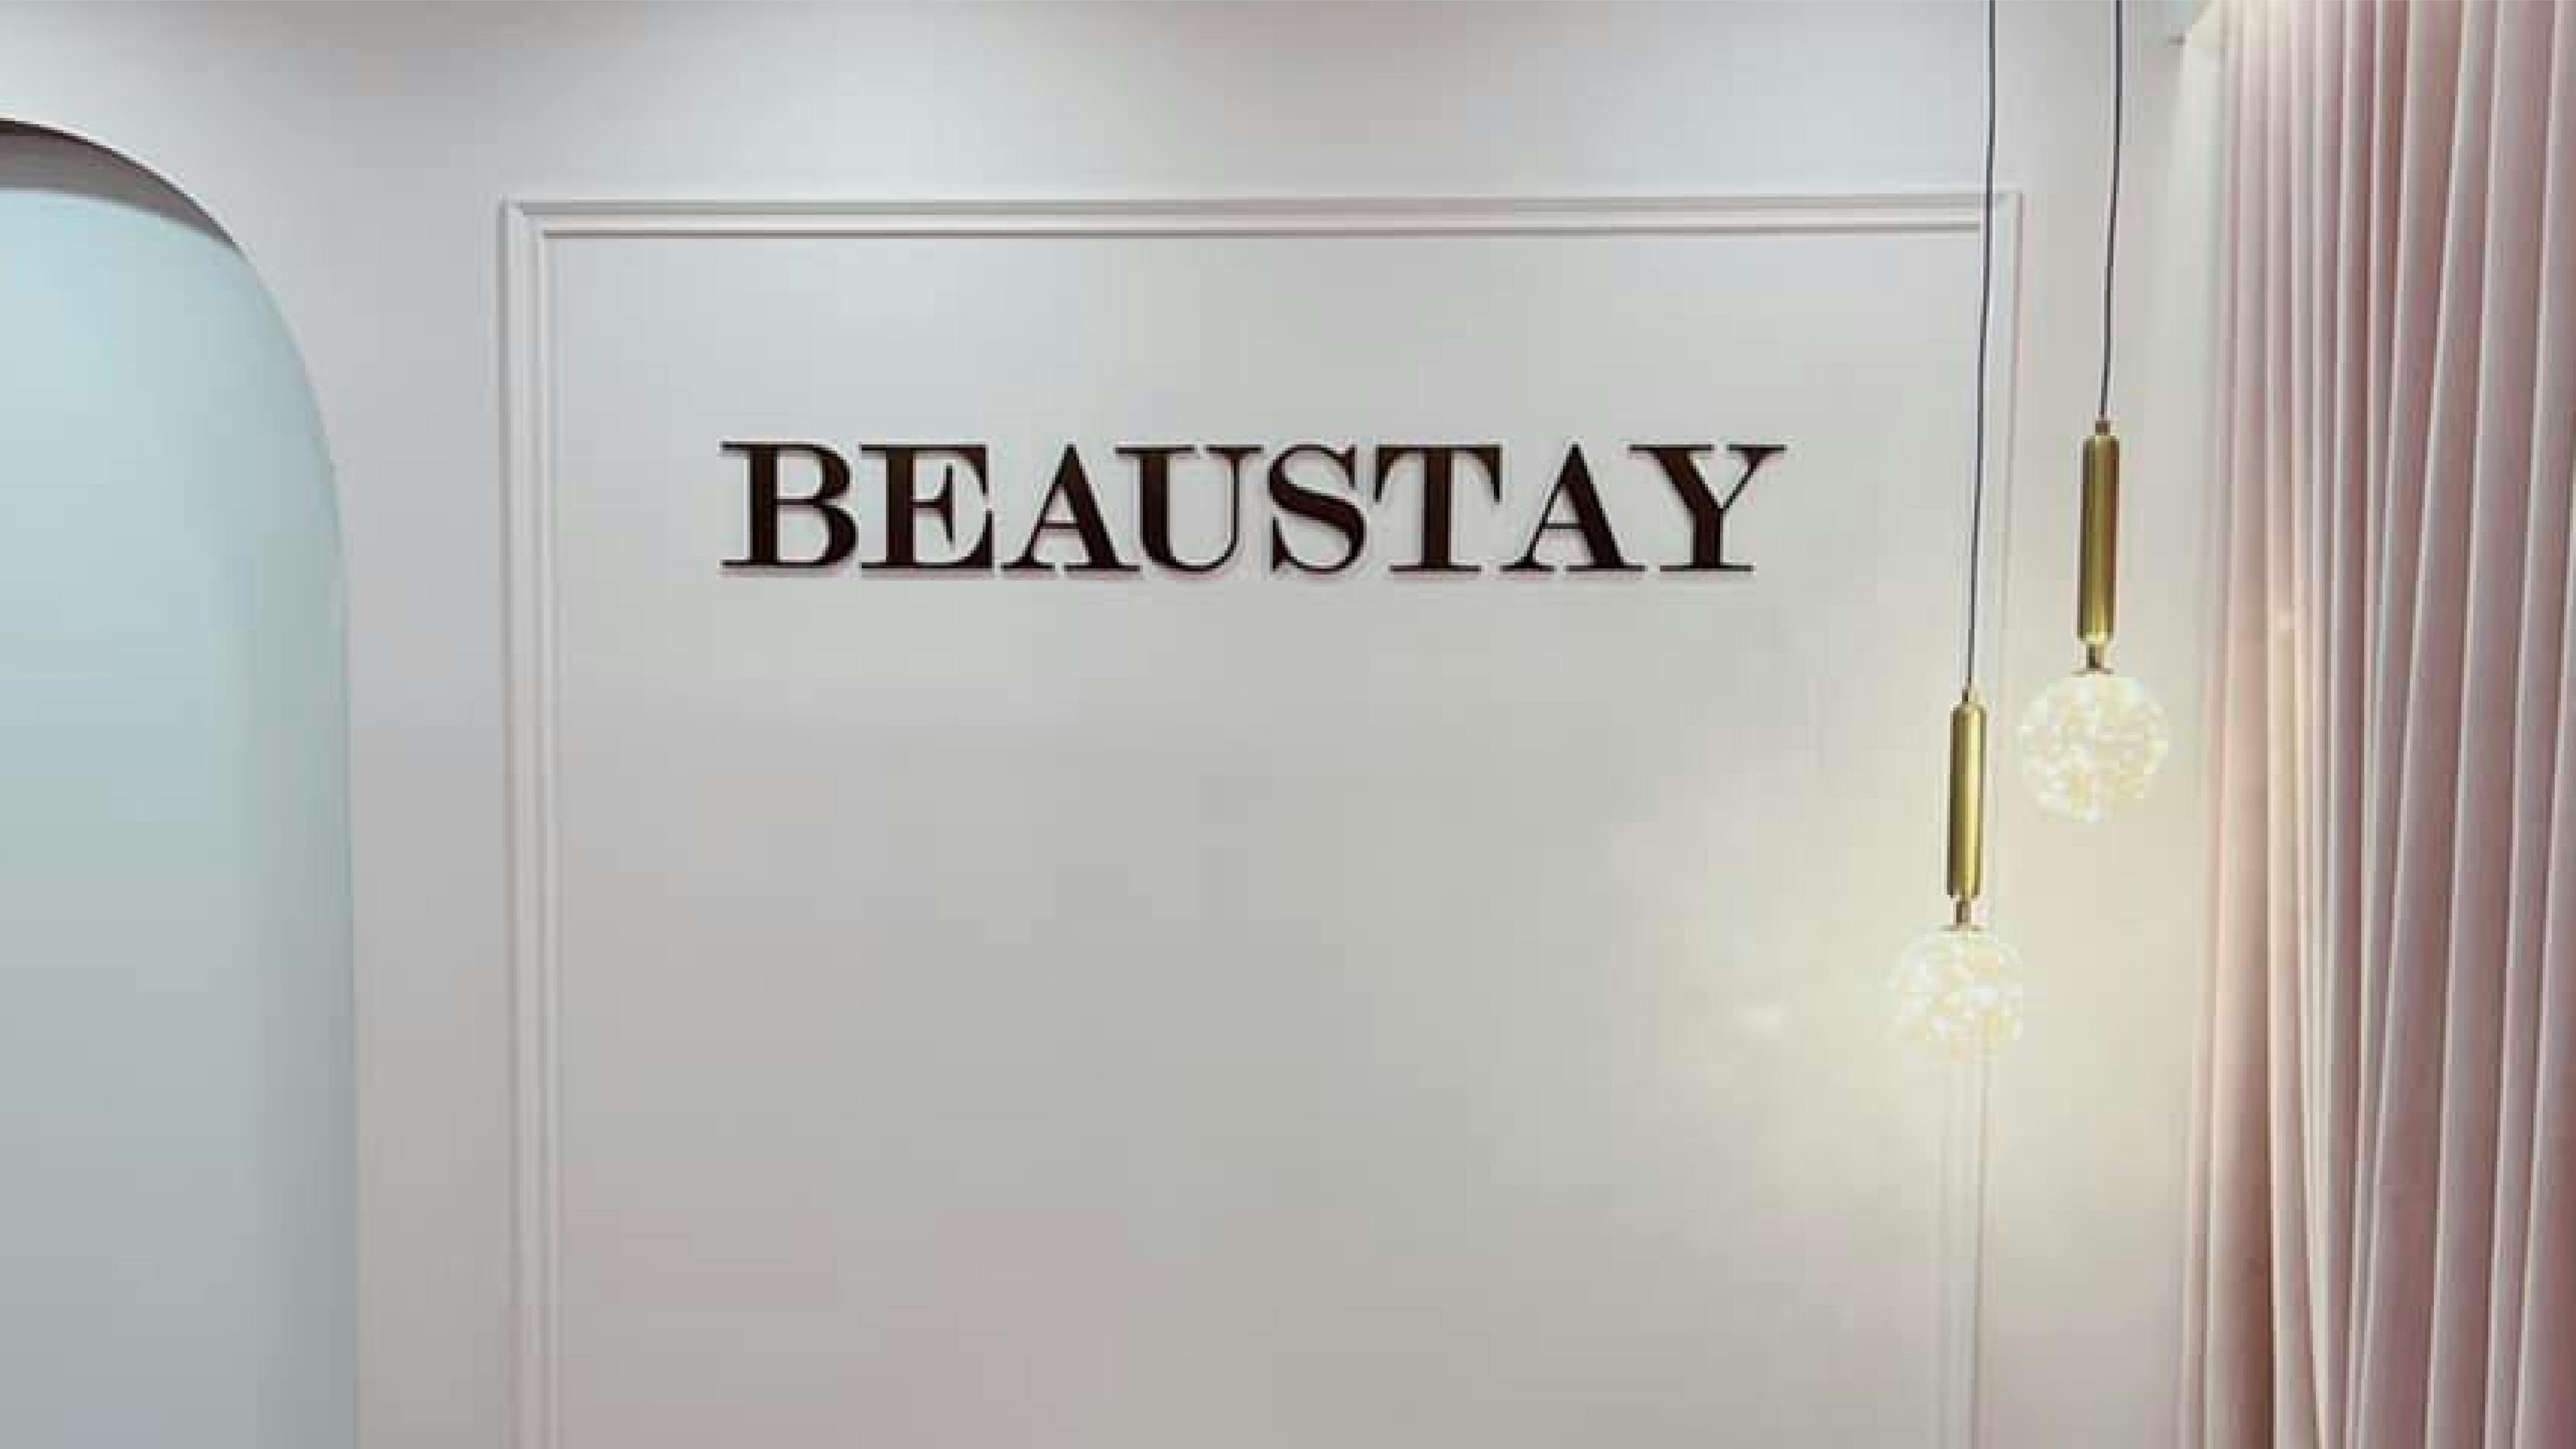 Beaustay Beauty